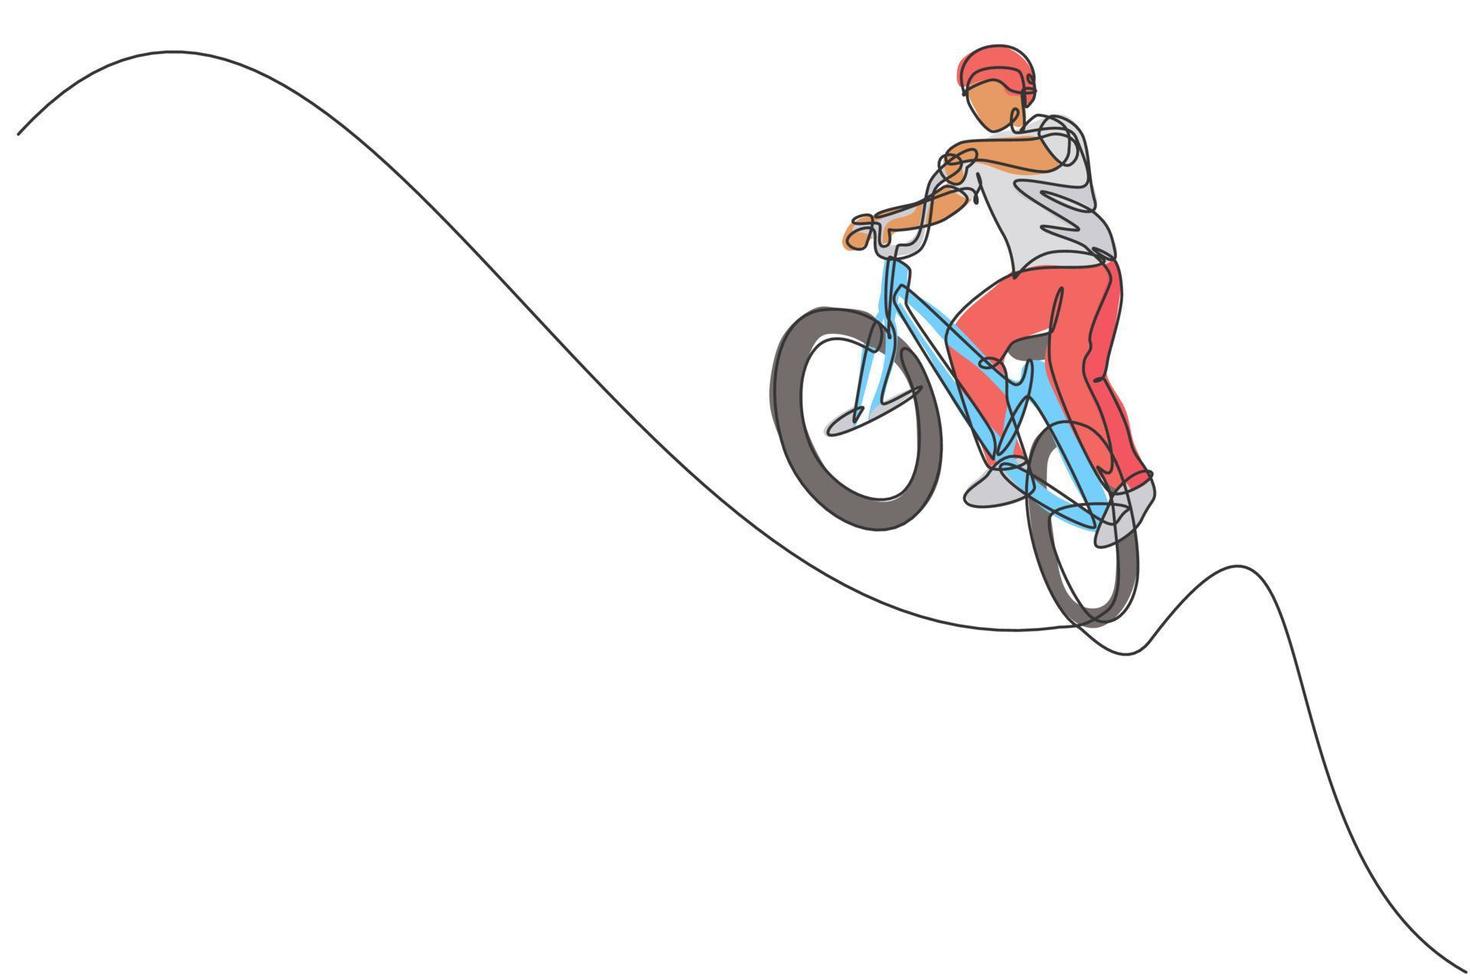 enda kontinuerlig linjeteckning av ung bmx-cykelryttare visar flygande på lufttricket i skatepark. bmx freestyle koncept. trendiga en rad rita design vektorillustration för freestyle marknadsföring media vektor